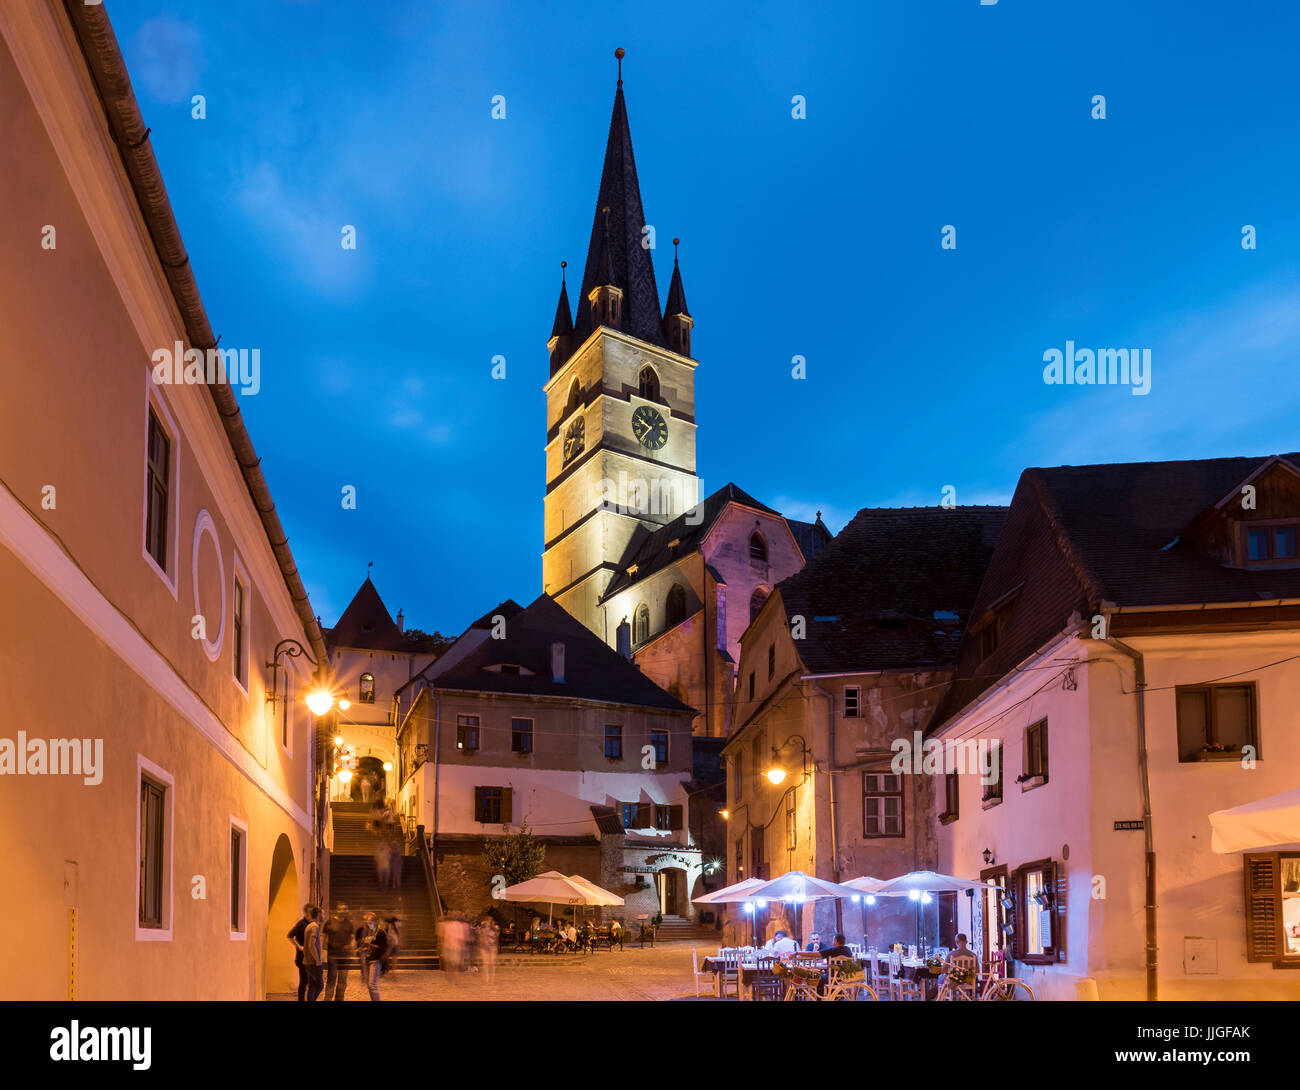 Vieille ville et cathédrale luthérienne de nuit, Sibiu, Roumanie Banque D'Images